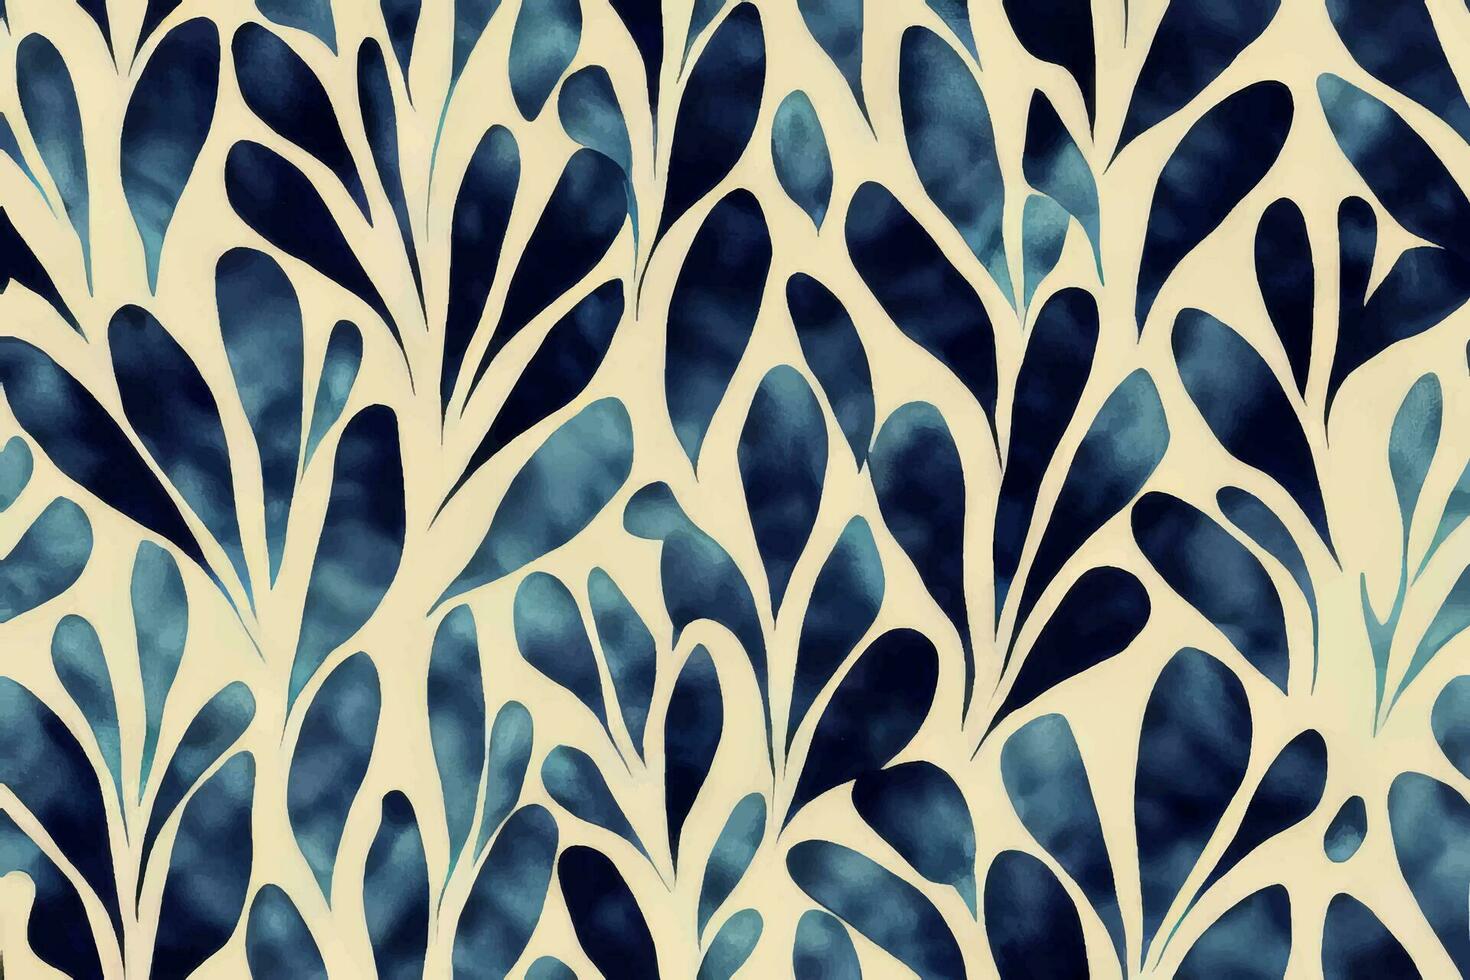 Corbata colorante shibori tye morir resumen batik cepillo tinta espiral remolino tela circulo sin costura diseño pintar retro botánico geométrico repetir dibujo loseta vector verde marrón oscuro azul colores , azul hojas